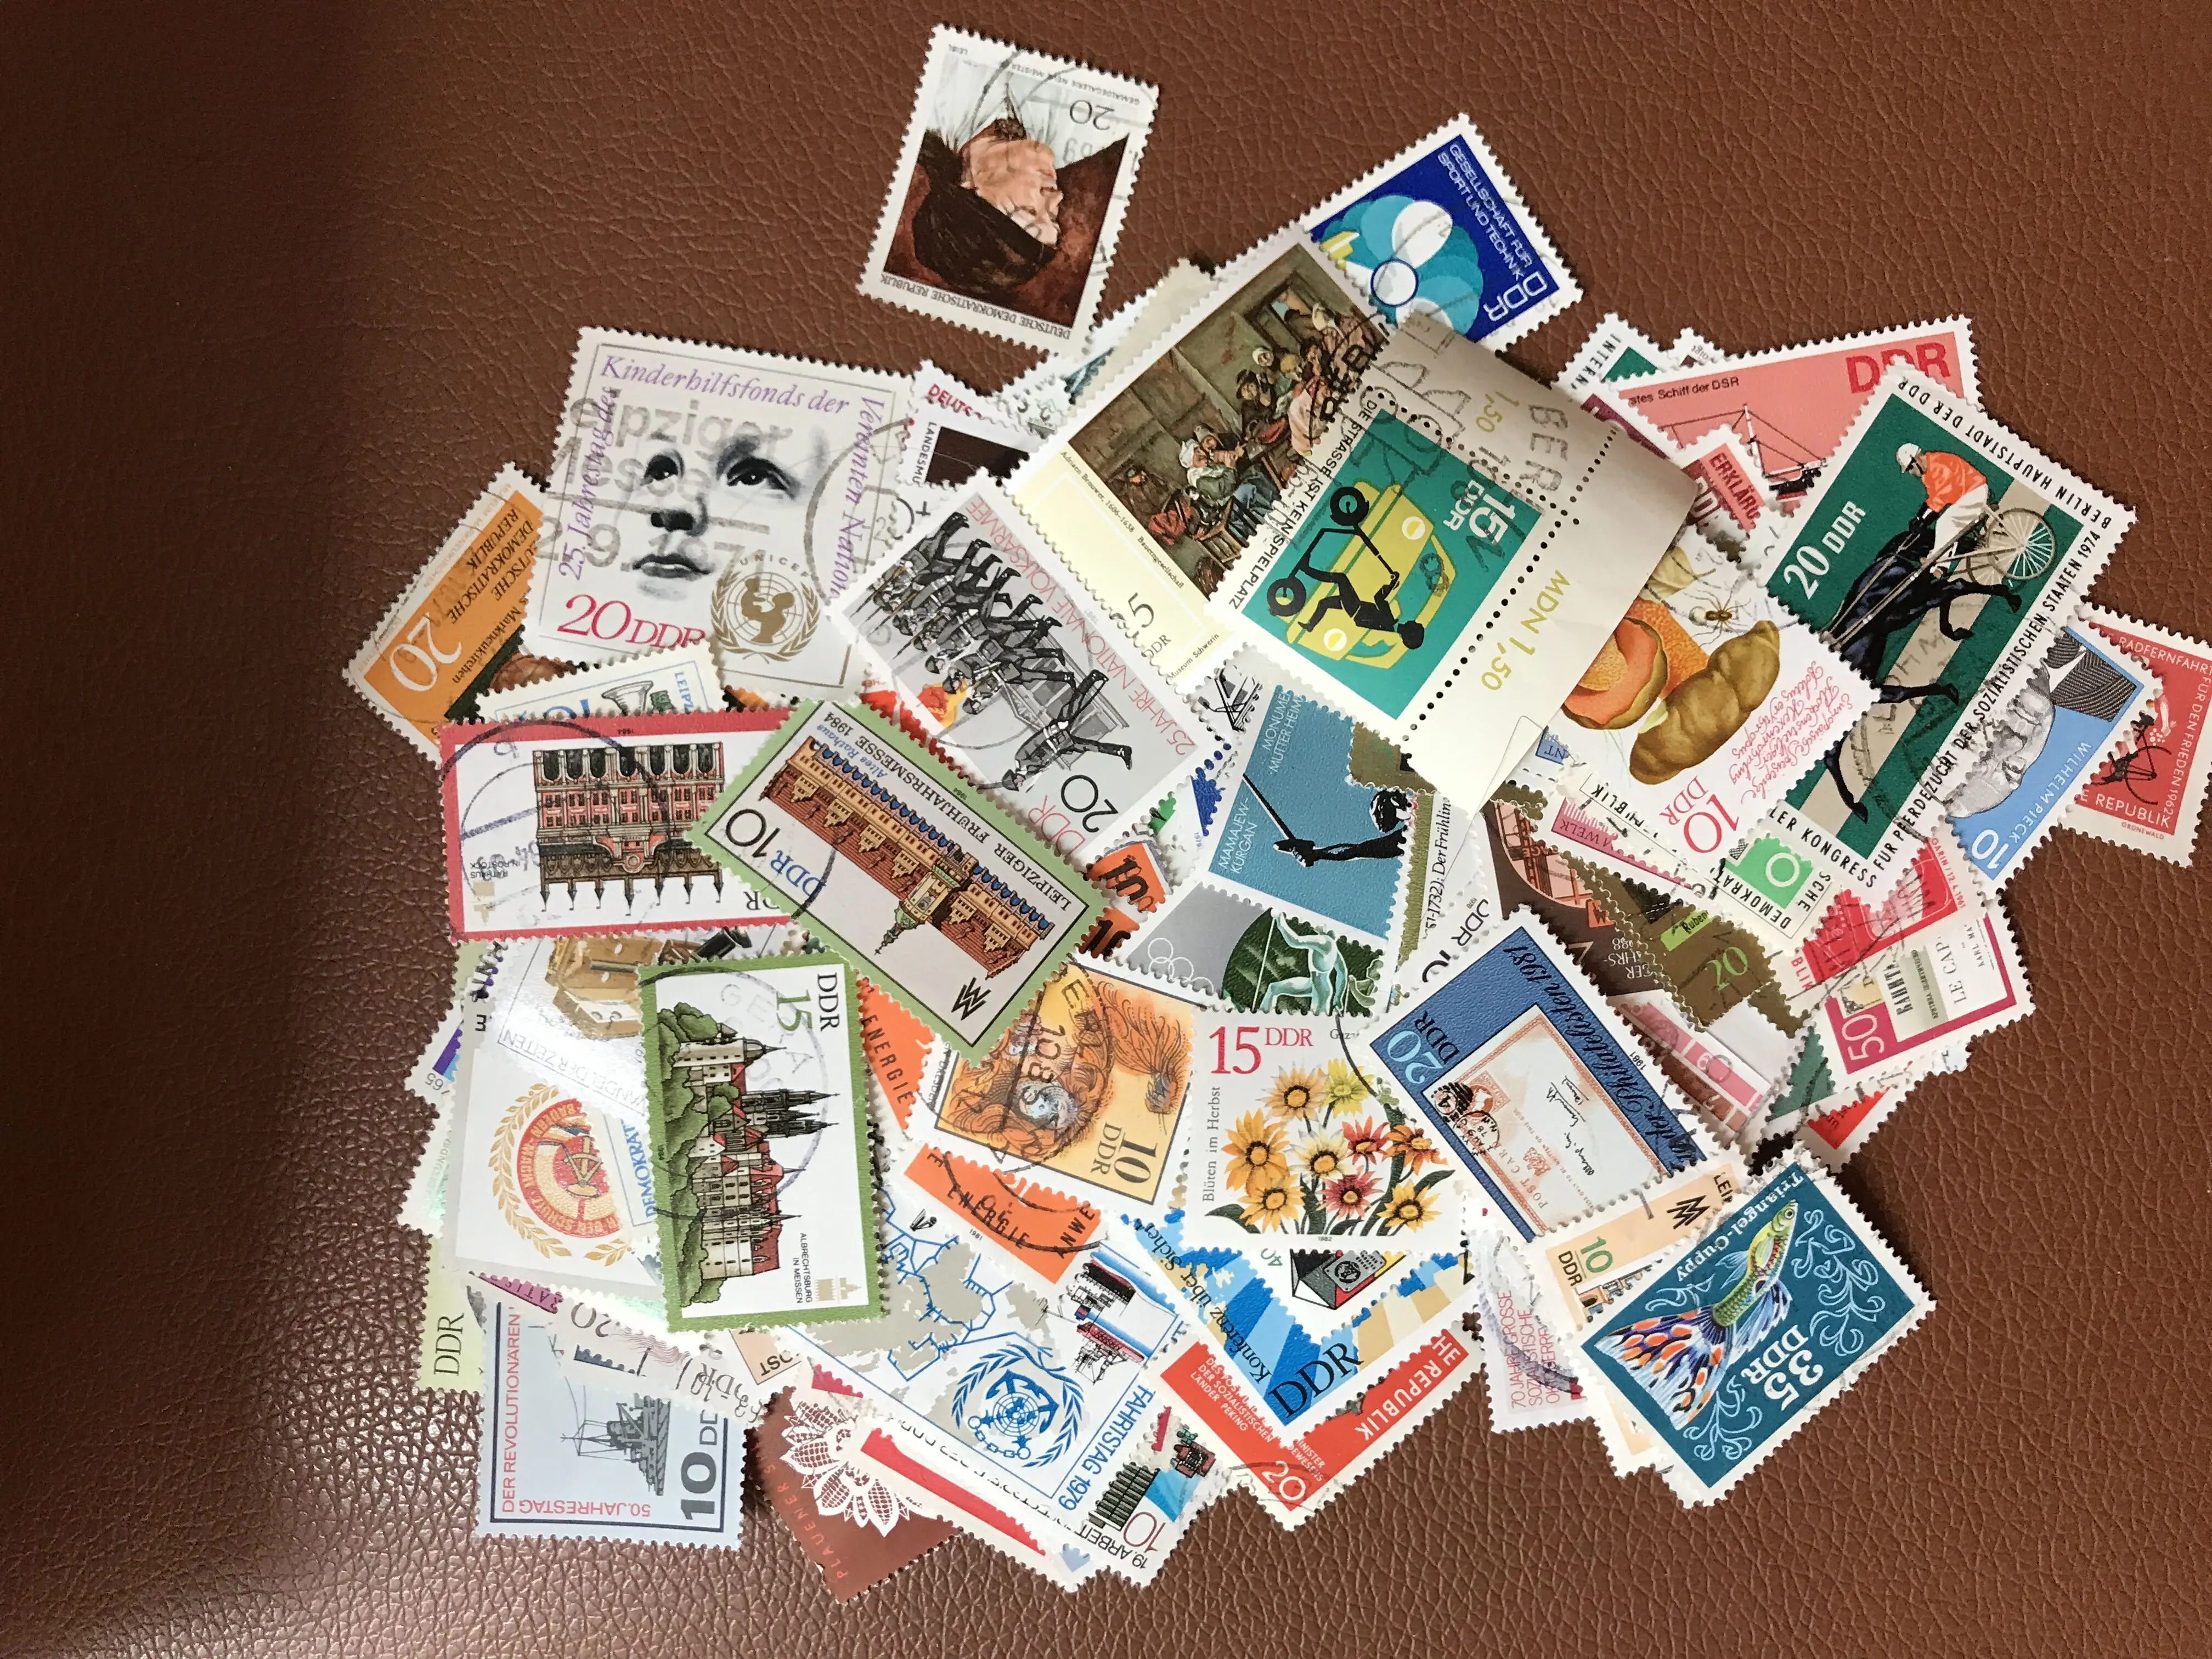 

50 шт./лот Демократическая Германия, все отличаются во многих странах, не повторяют неиспользованные почтовые штампы для коллекционирования